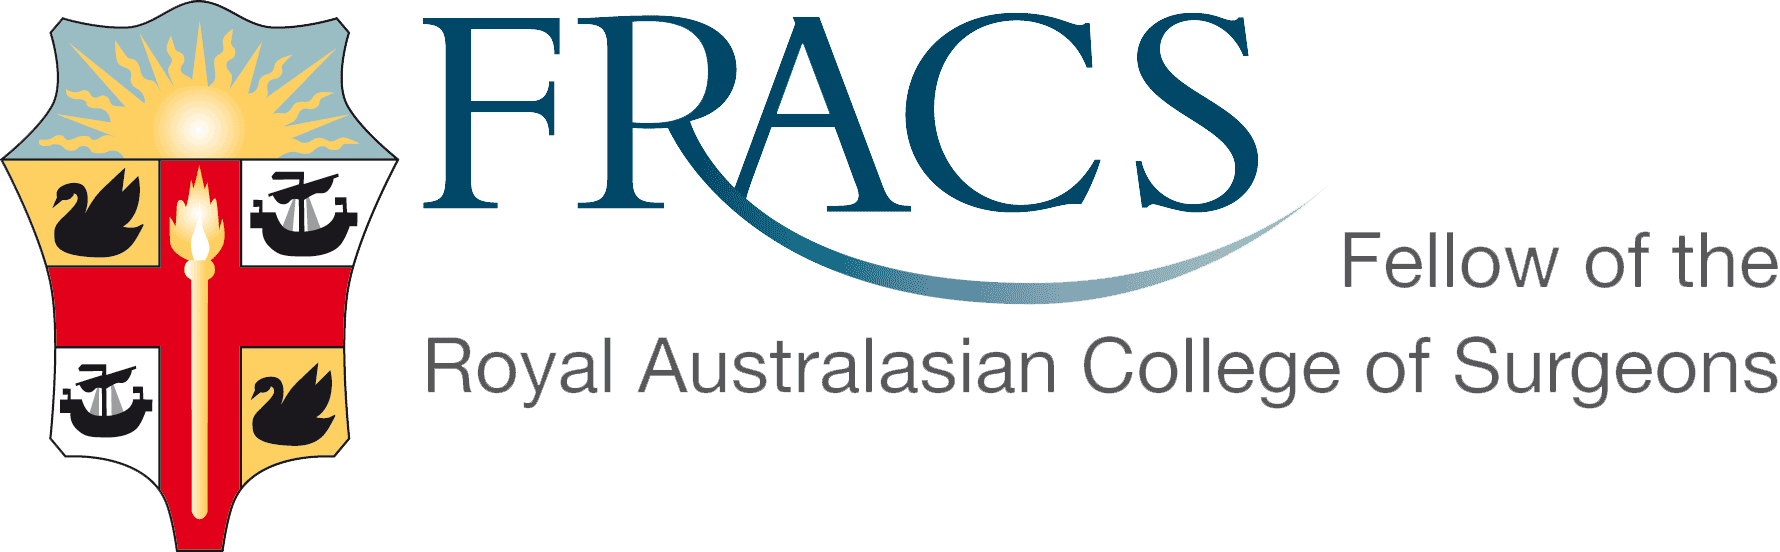 FRACS Logo